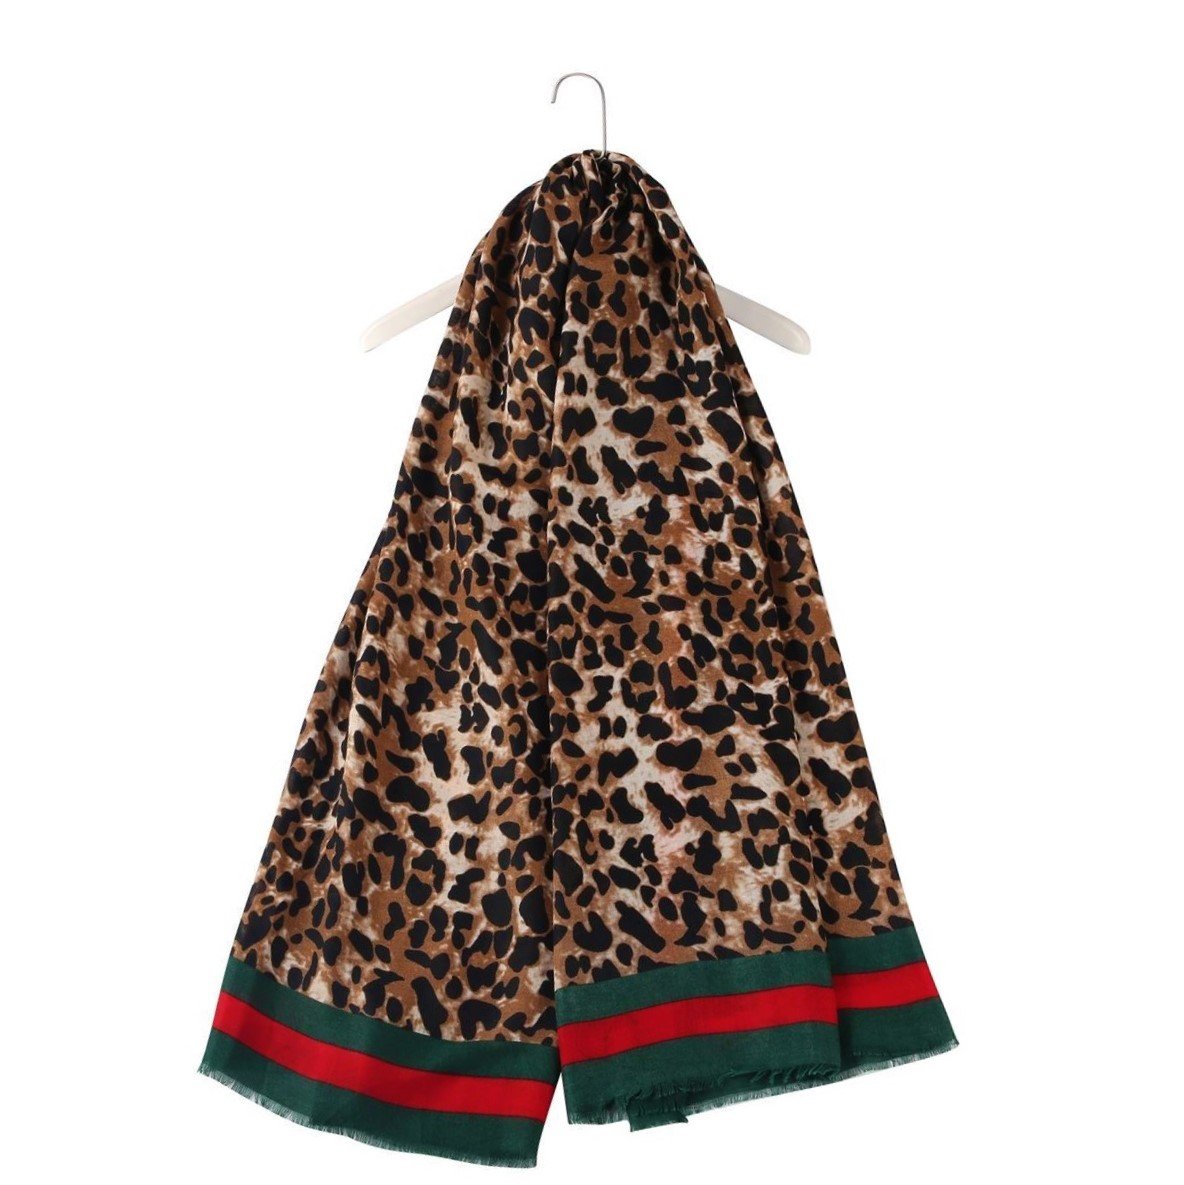 Šála-šátek 90 cm x 180 cm, Leopardí vzor se zelenými a červenými okraji